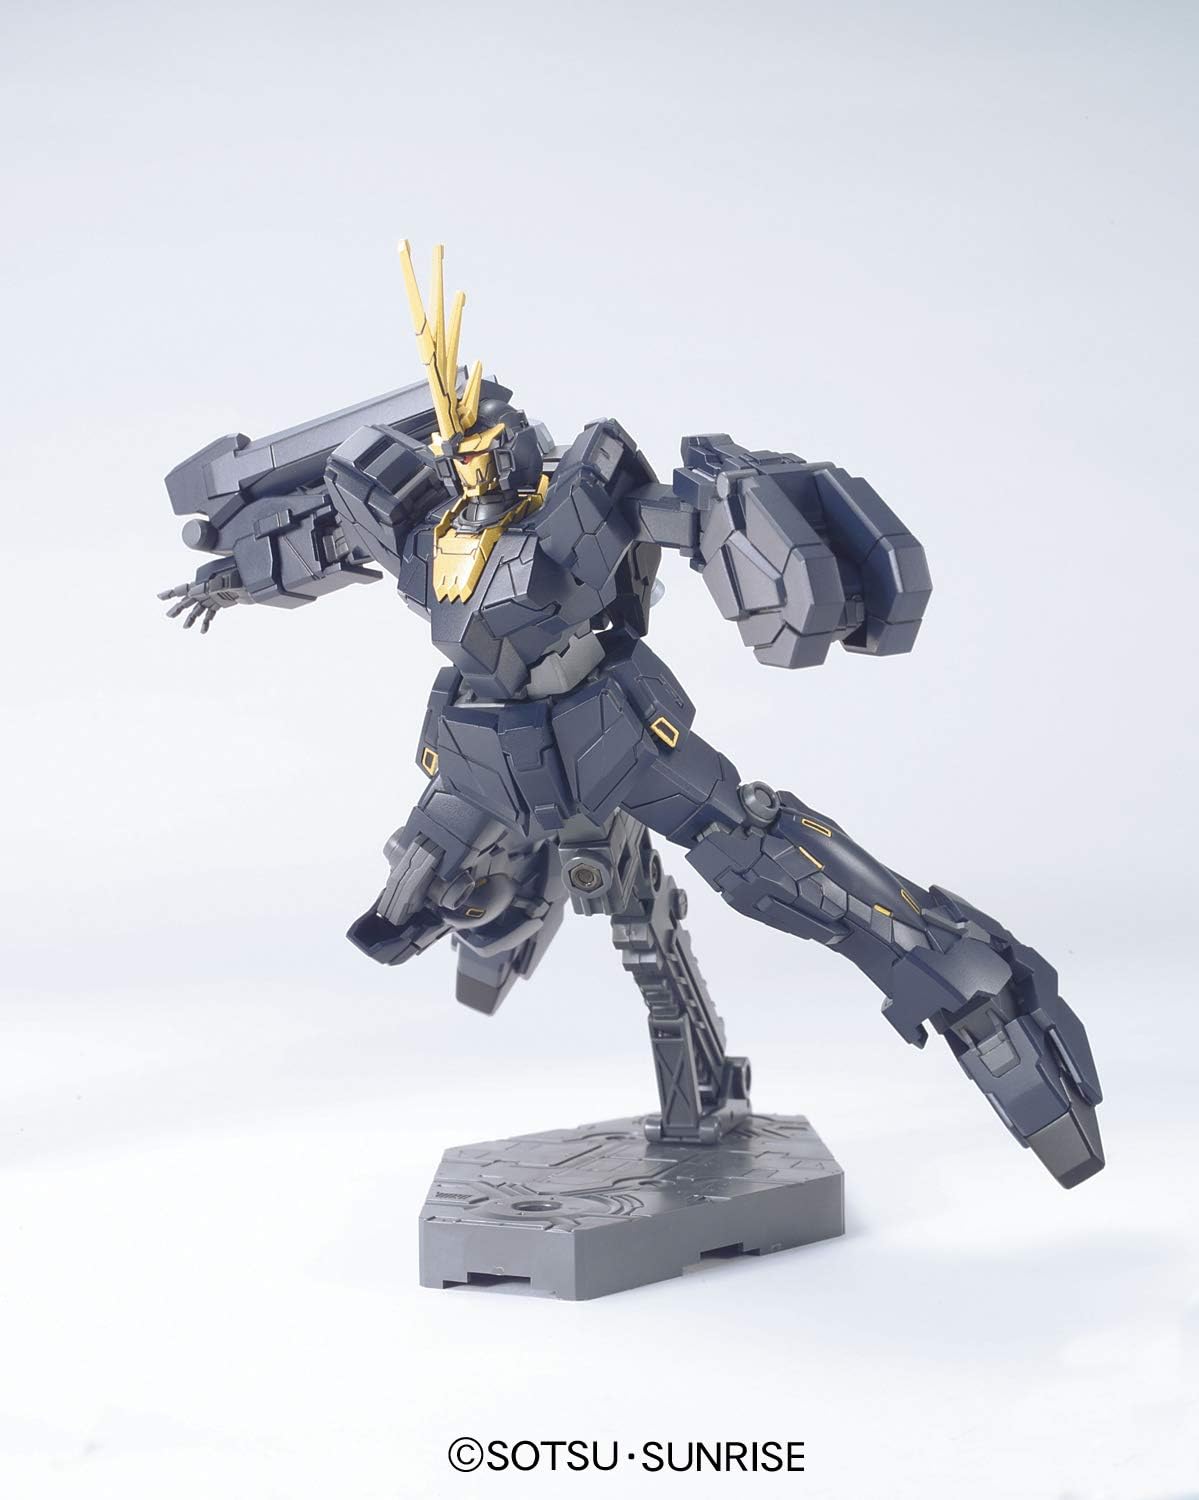 1/144 "Gundam UC" HGUC Banshee Unicorn Mode | animota